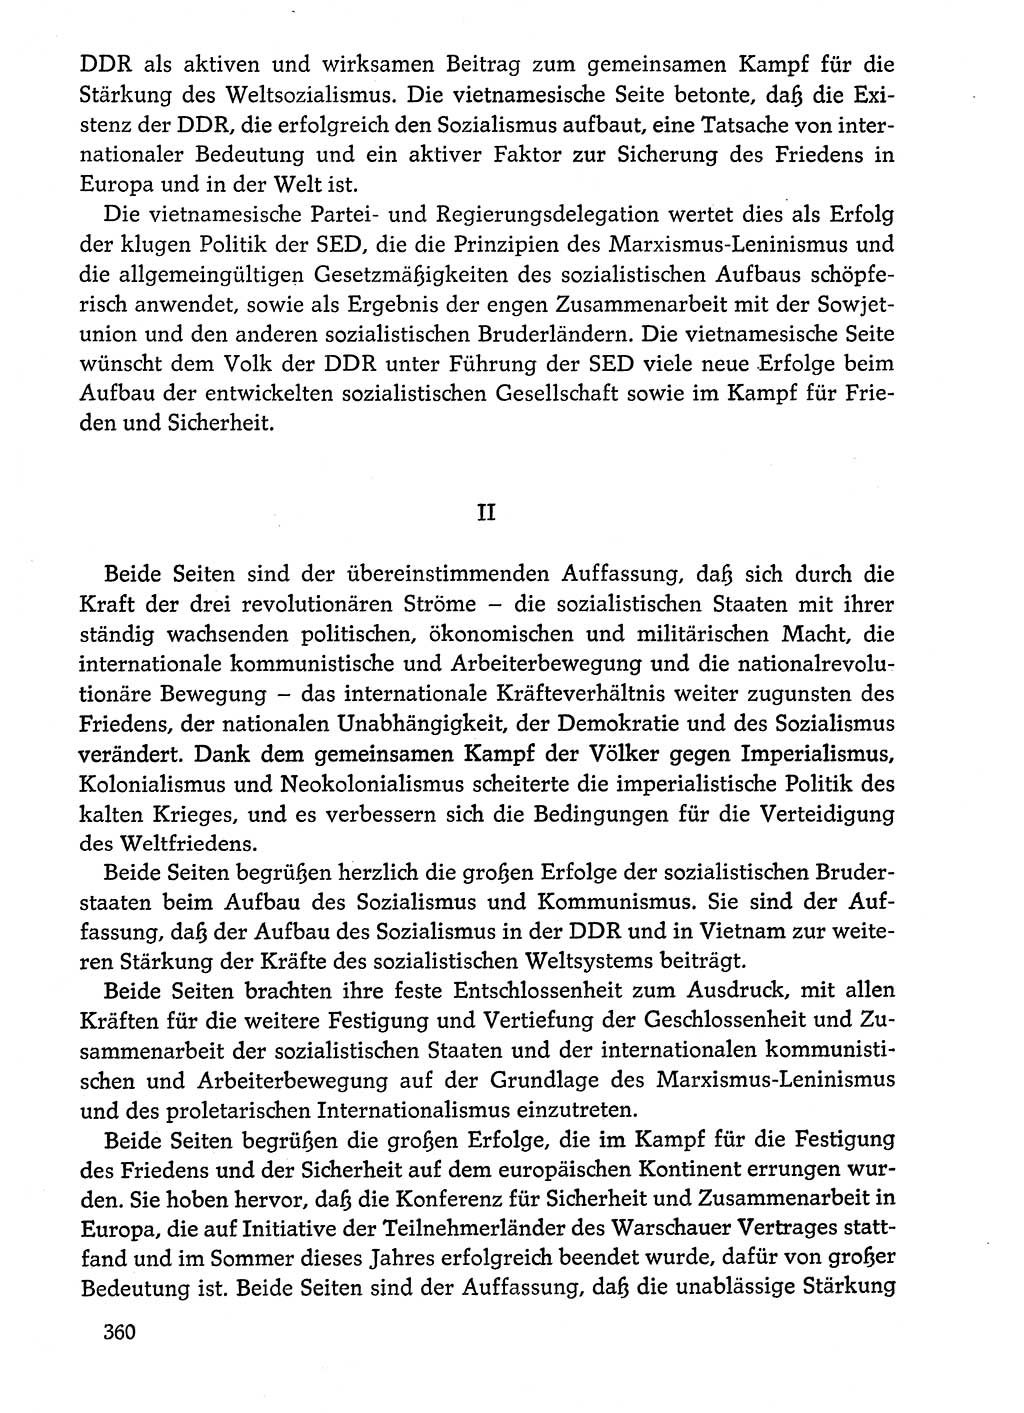 Dokumente der Sozialistischen Einheitspartei Deutschlands (SED) [Deutsche Demokratische Republik (DDR)] 1974-1975, Seite 360 (Dok. SED DDR 1978, Bd. ⅩⅤ, S. 360)